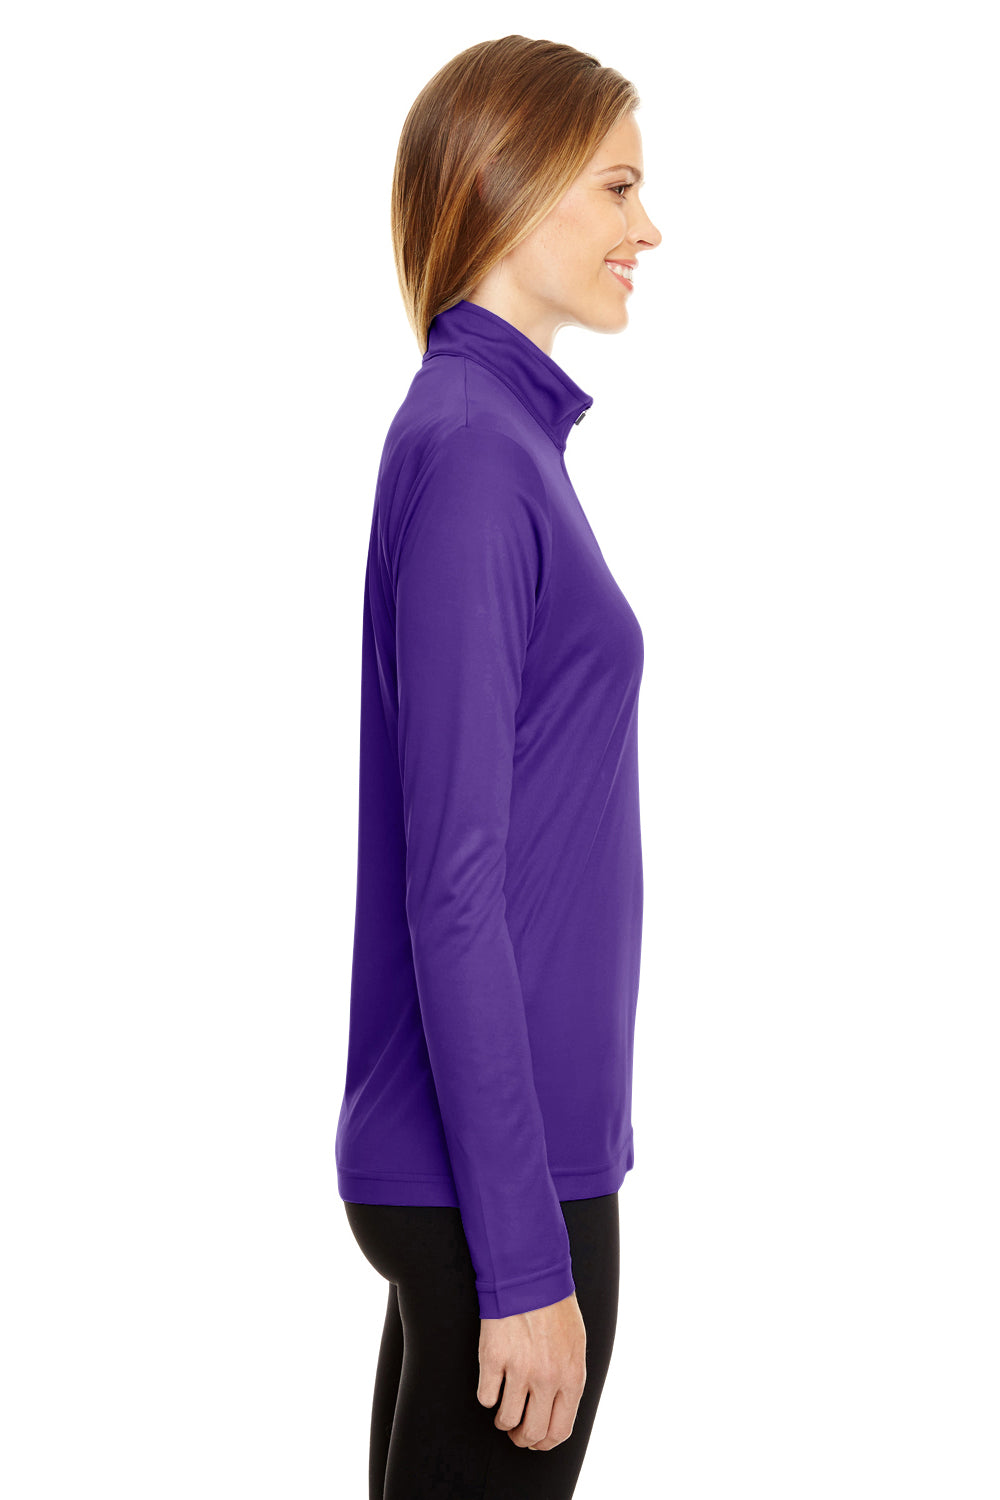 Team 365 TT31W Womens Zone Performance Moisture Wicking 1/4 Zip Sweatshirt Purple Side